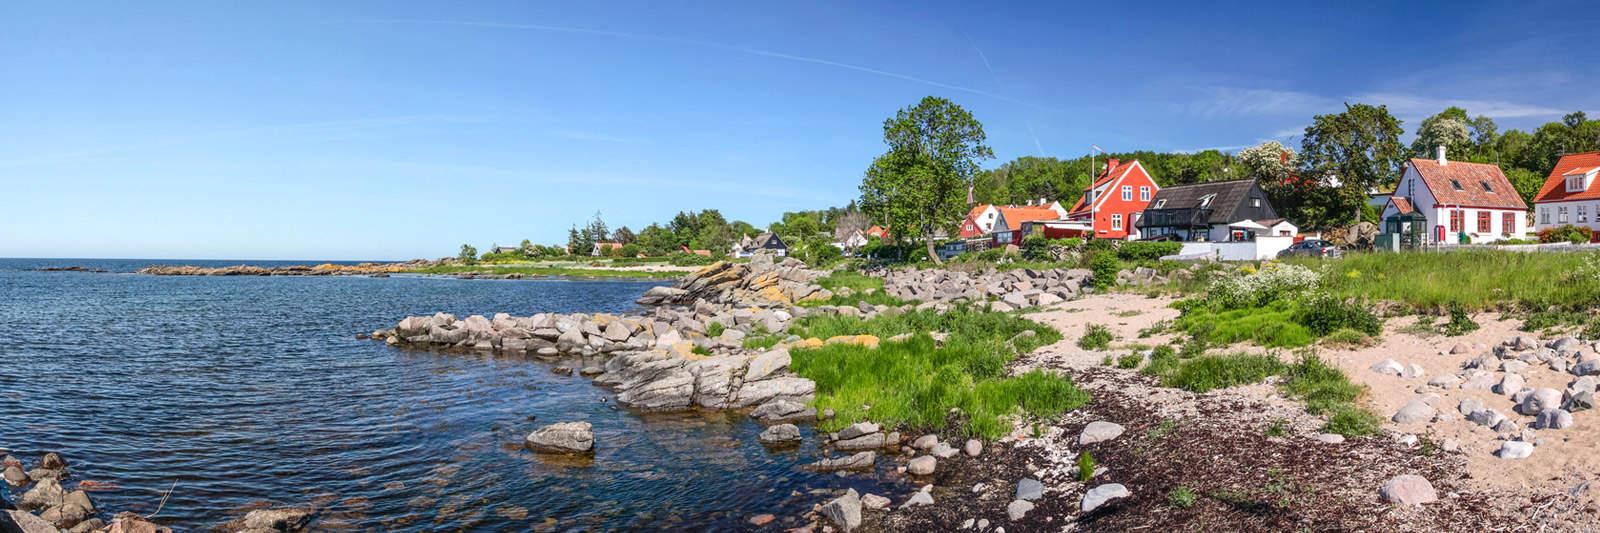 15 Ferienwohnungen und Ferienhäuser in Oddermose Strand - tourist-online.de